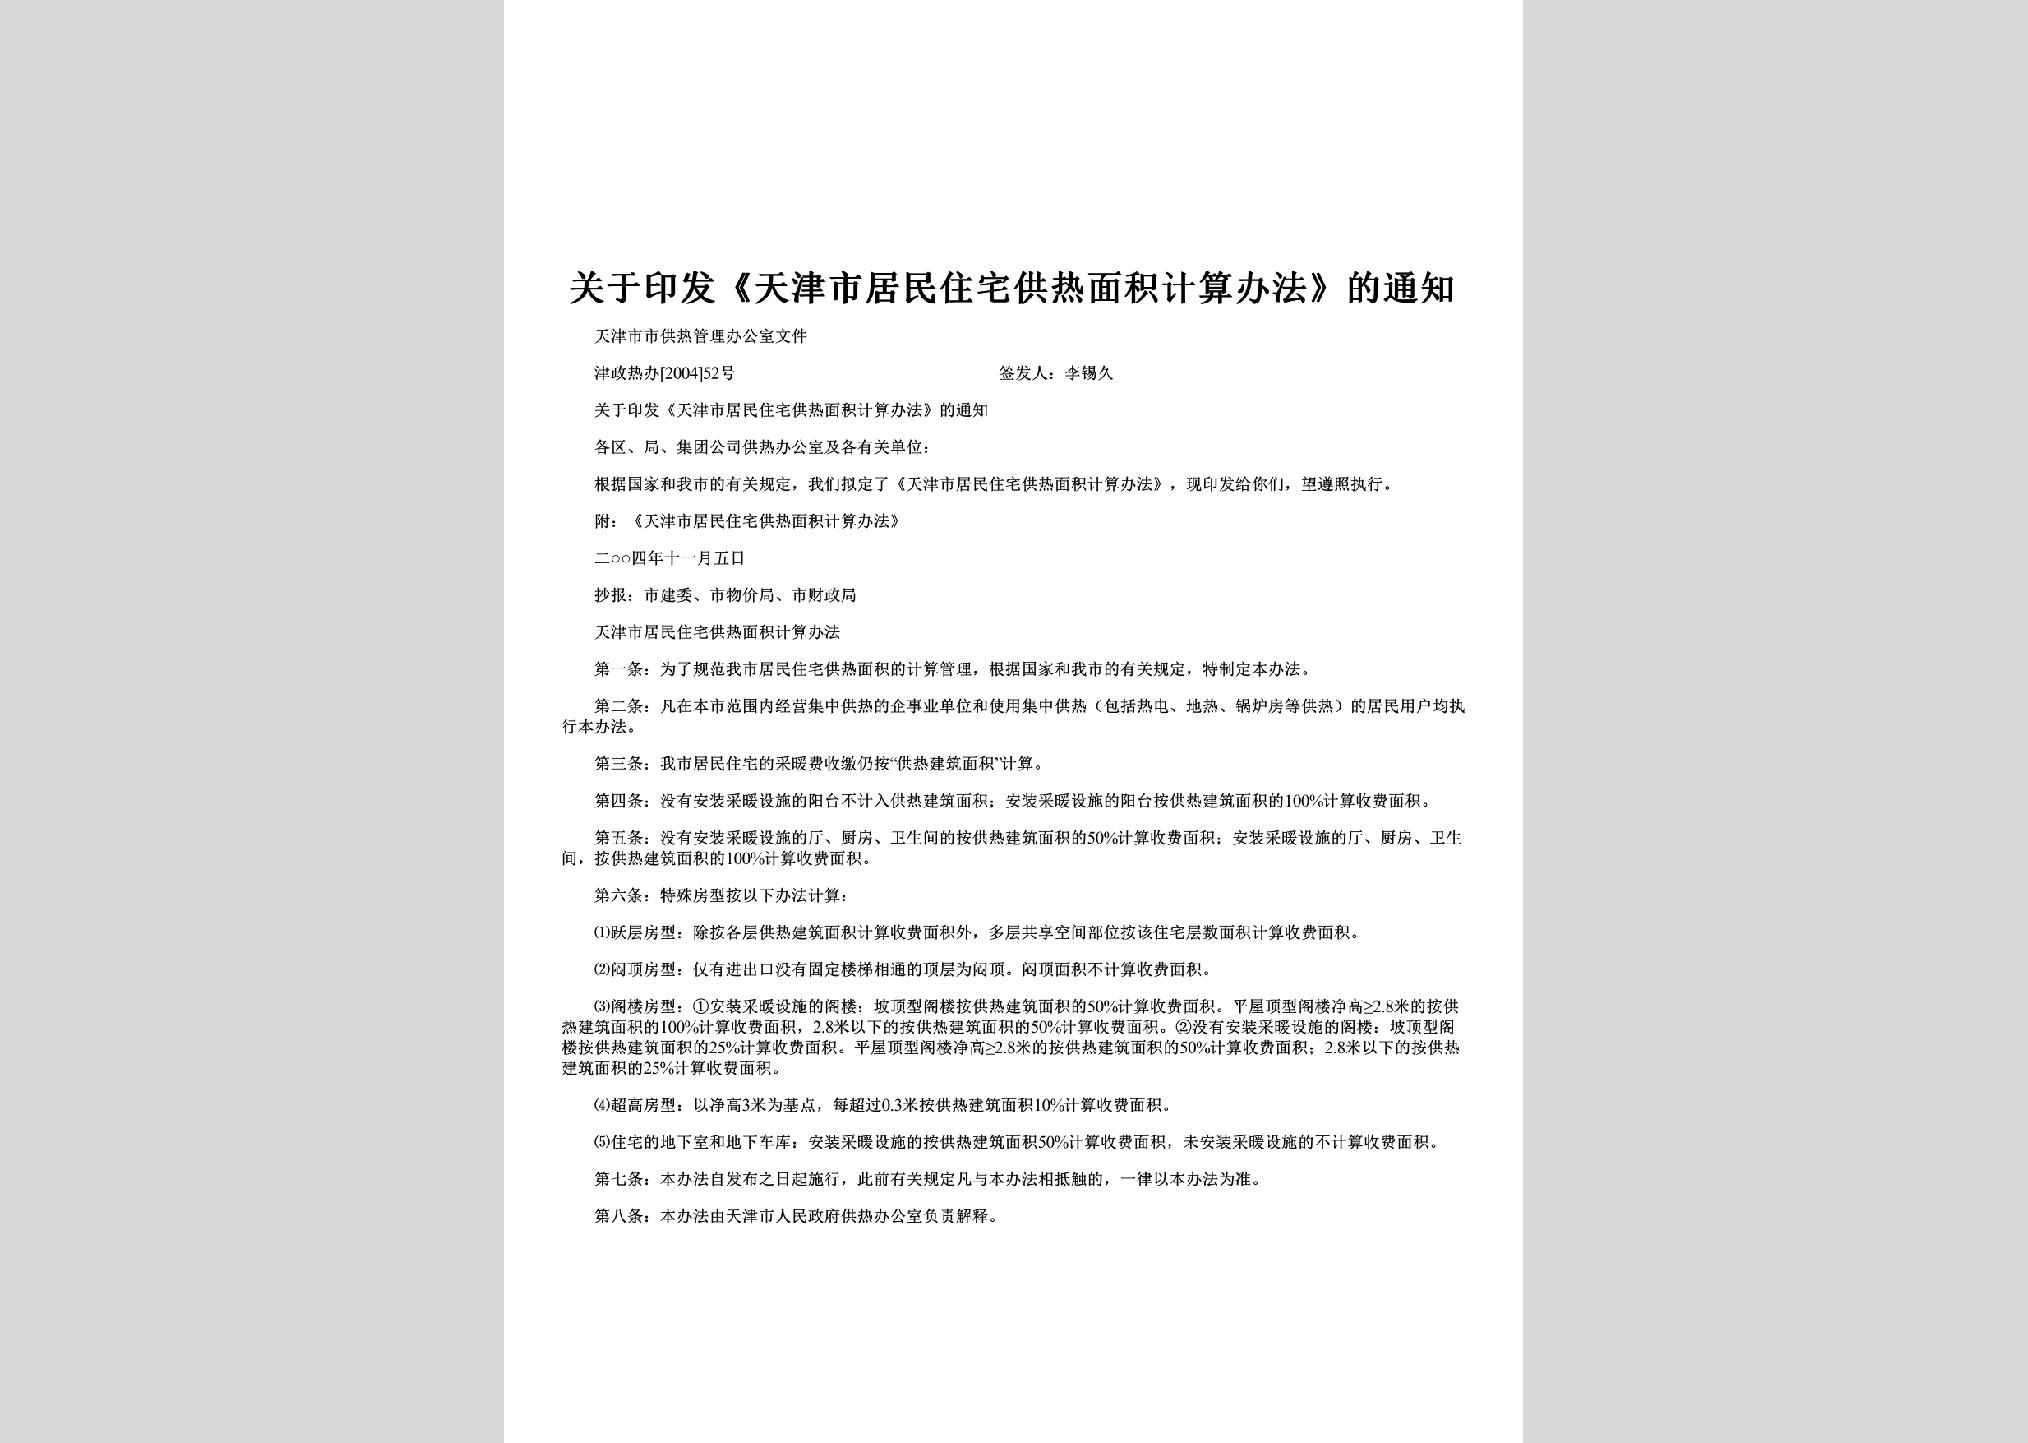 津政热办[2004]52号：关于印发《天津市居民住宅供热面积计算办法》的通知